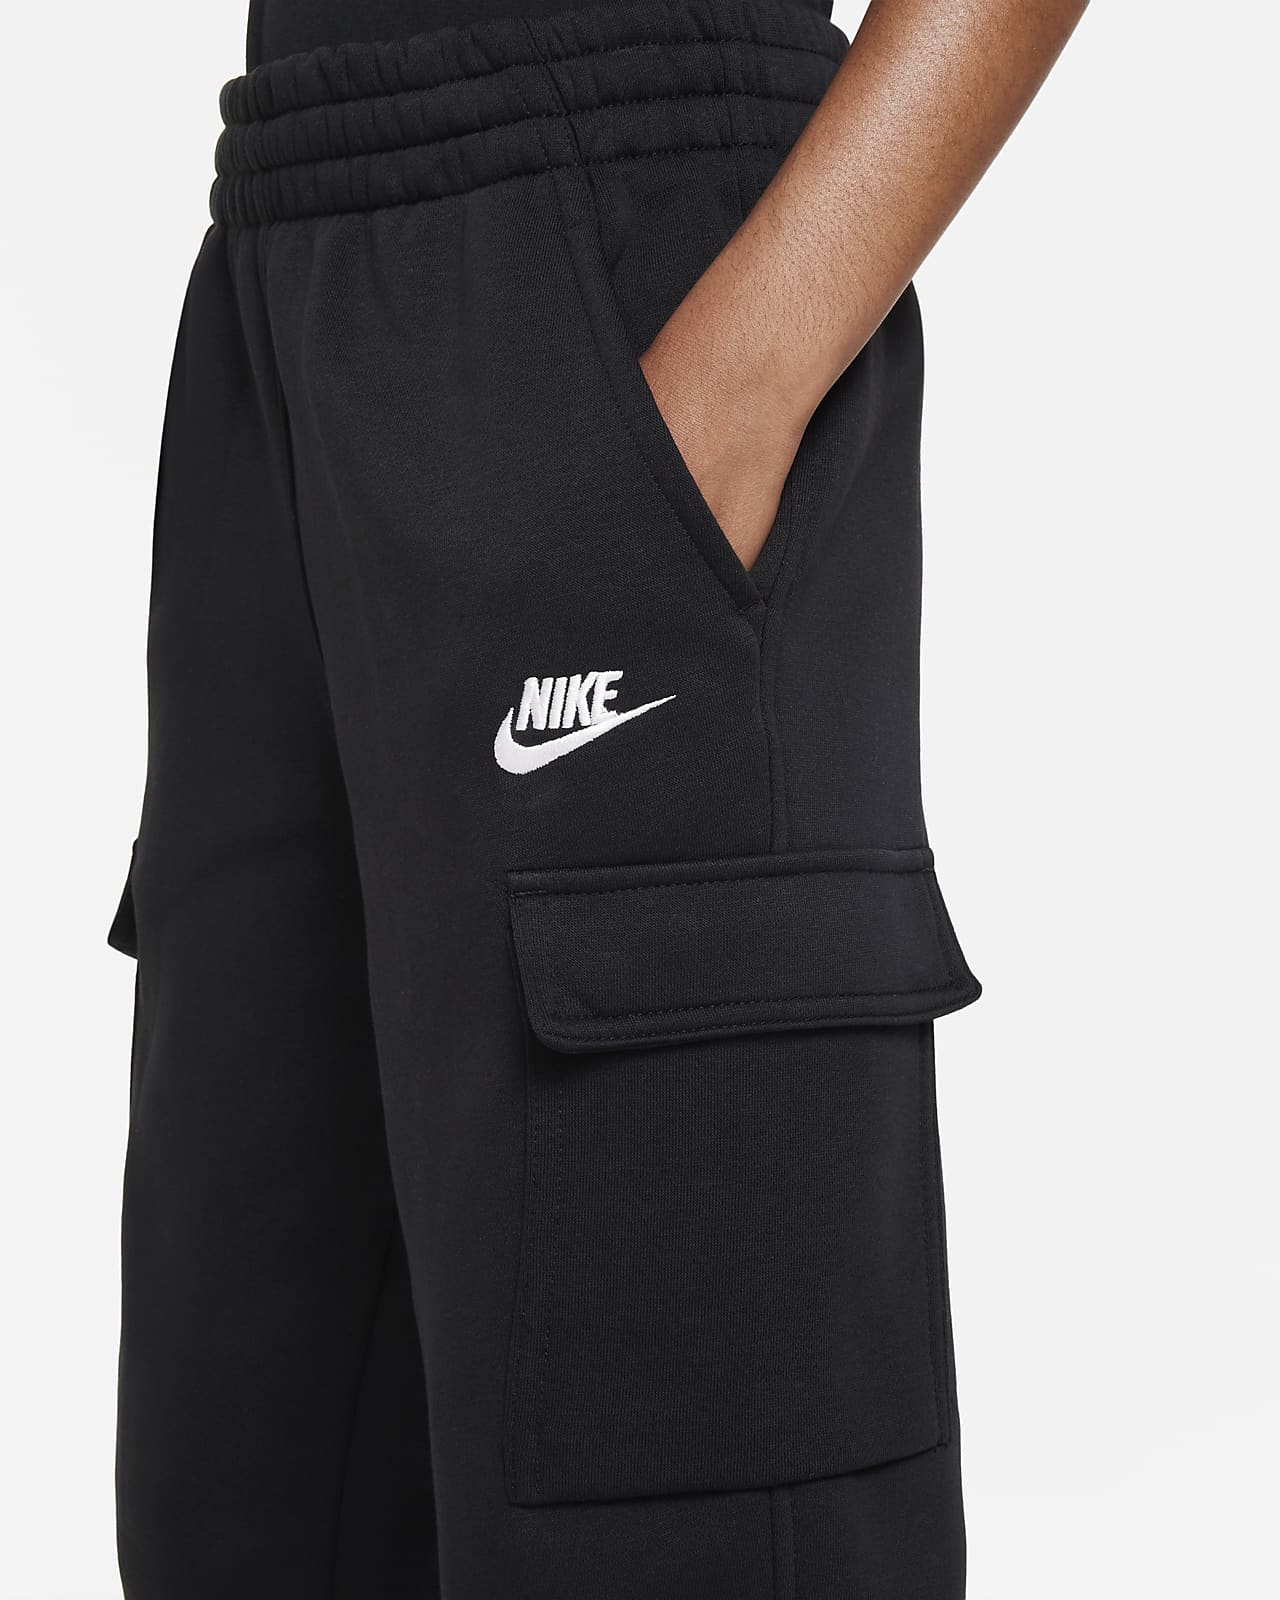 Nike Sportswear Club Fleece Big Kids' (Boys') Pants